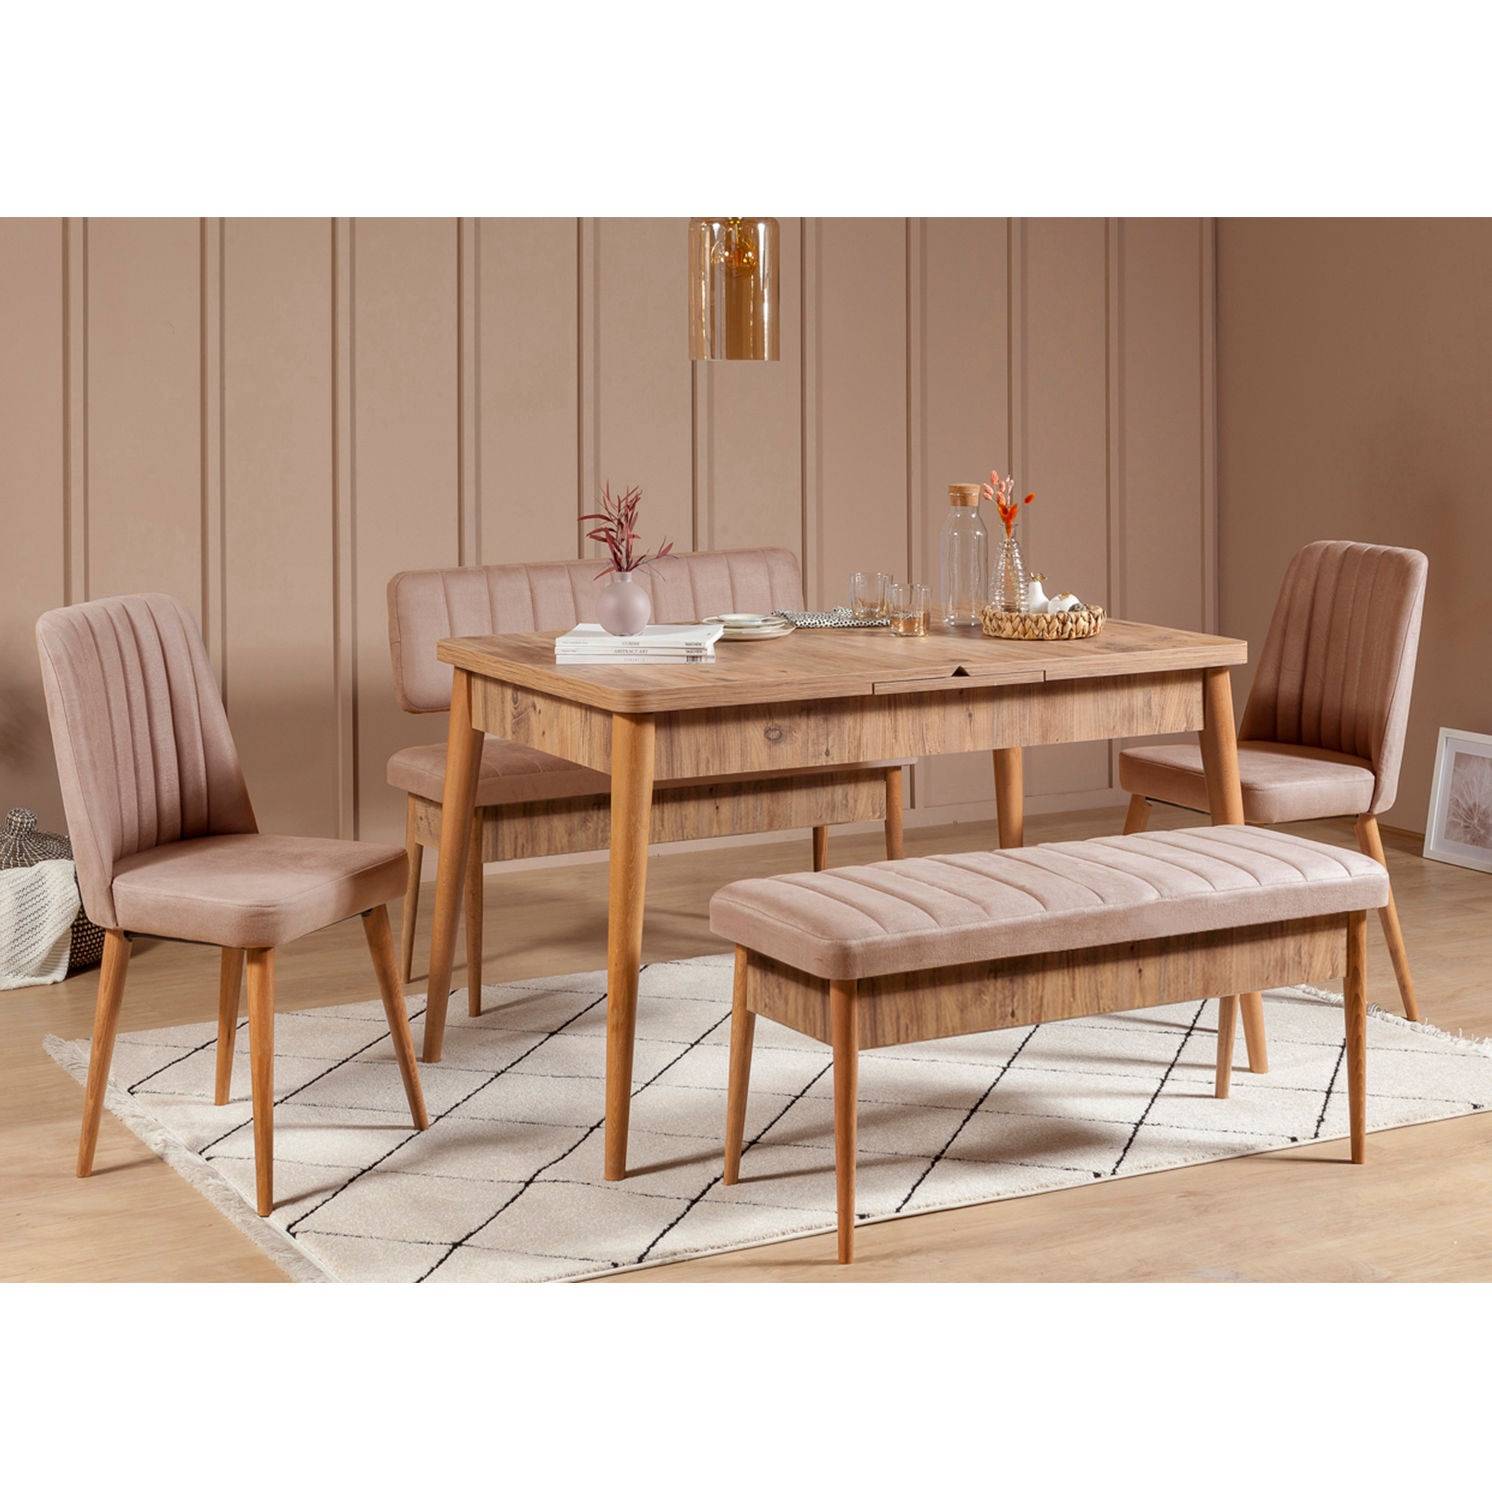 Conjunto de mesa extensible, 2 sillas, banco y banqueta Malva Madera clara y tela beige